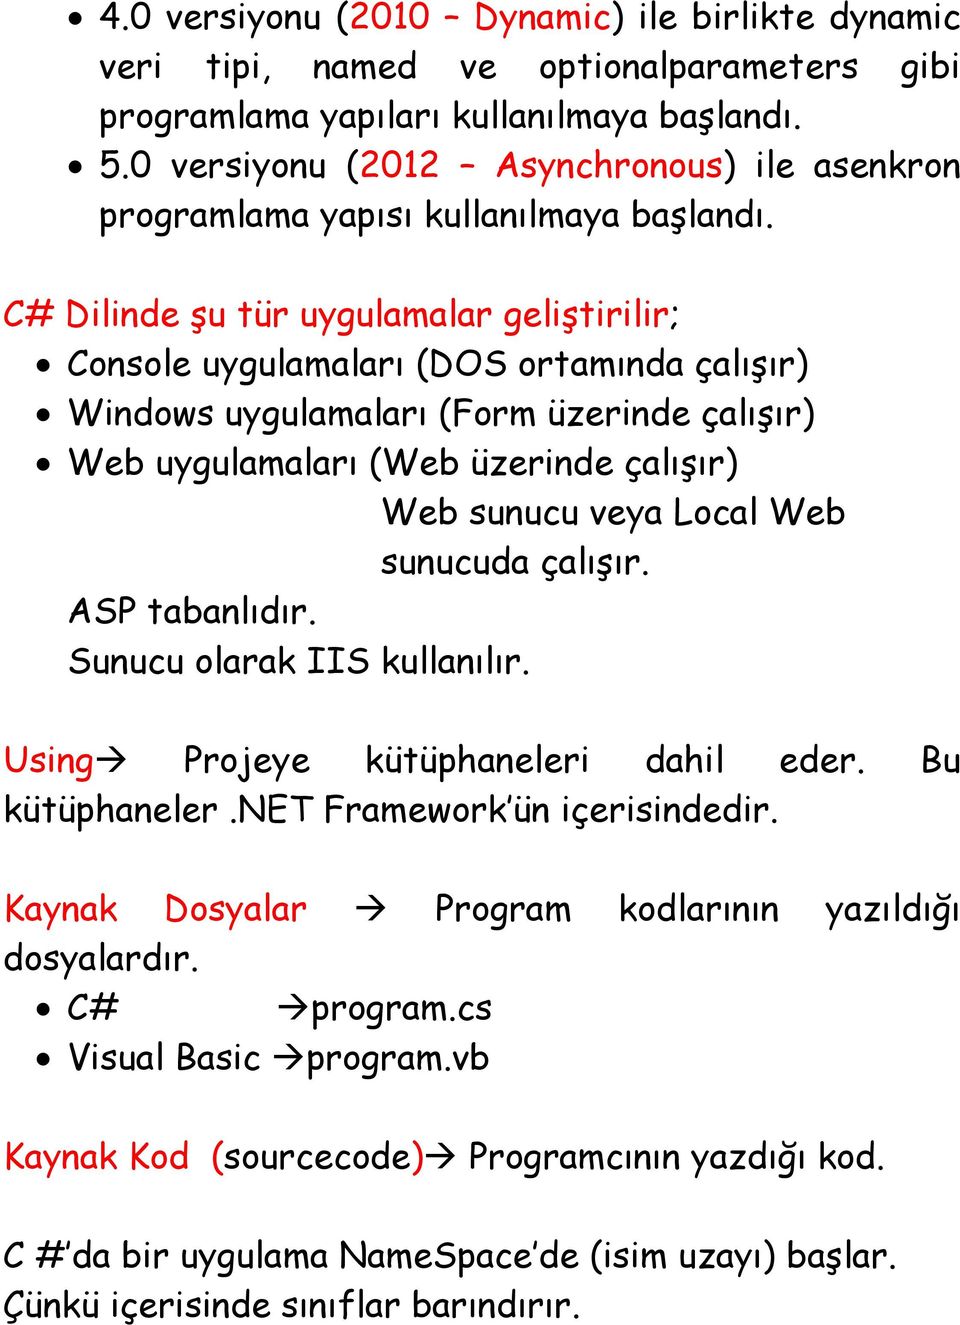 C# Dilinde şu tür uygulamalar geliştirilir; Console uygulamaları (DOS ortamında çalışır) Windows uygulamaları (Form üzerinde çalışır) Web uygulamaları (Web üzerinde çalışır) Web sunucu veya Local Web